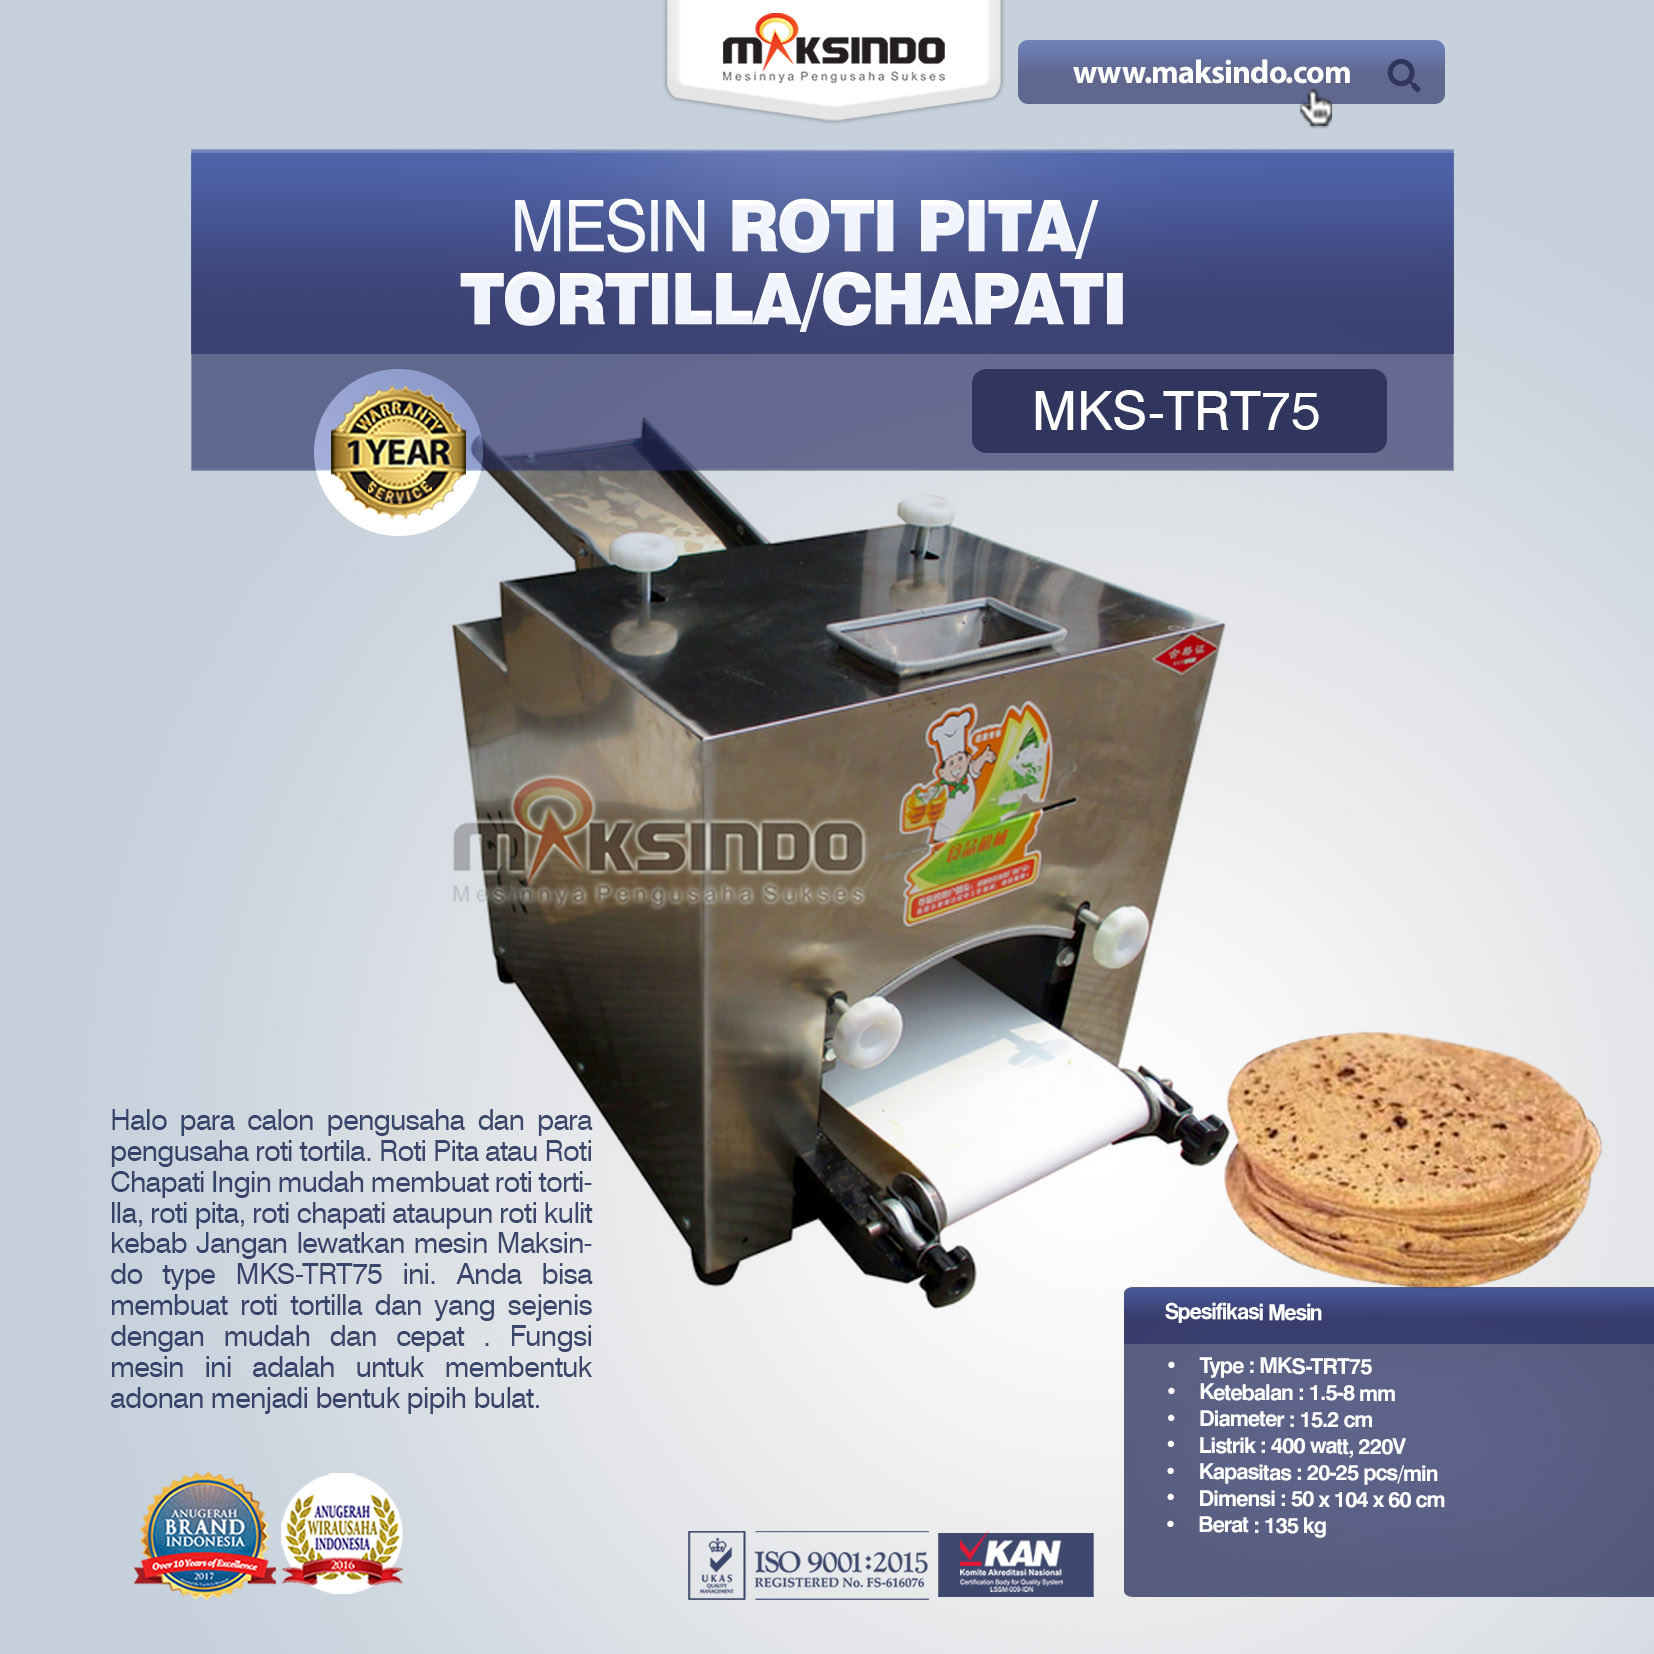 Jual Mesin Roti Pita/Tortilla/Chapati MKS-TRT75 di Tangerang